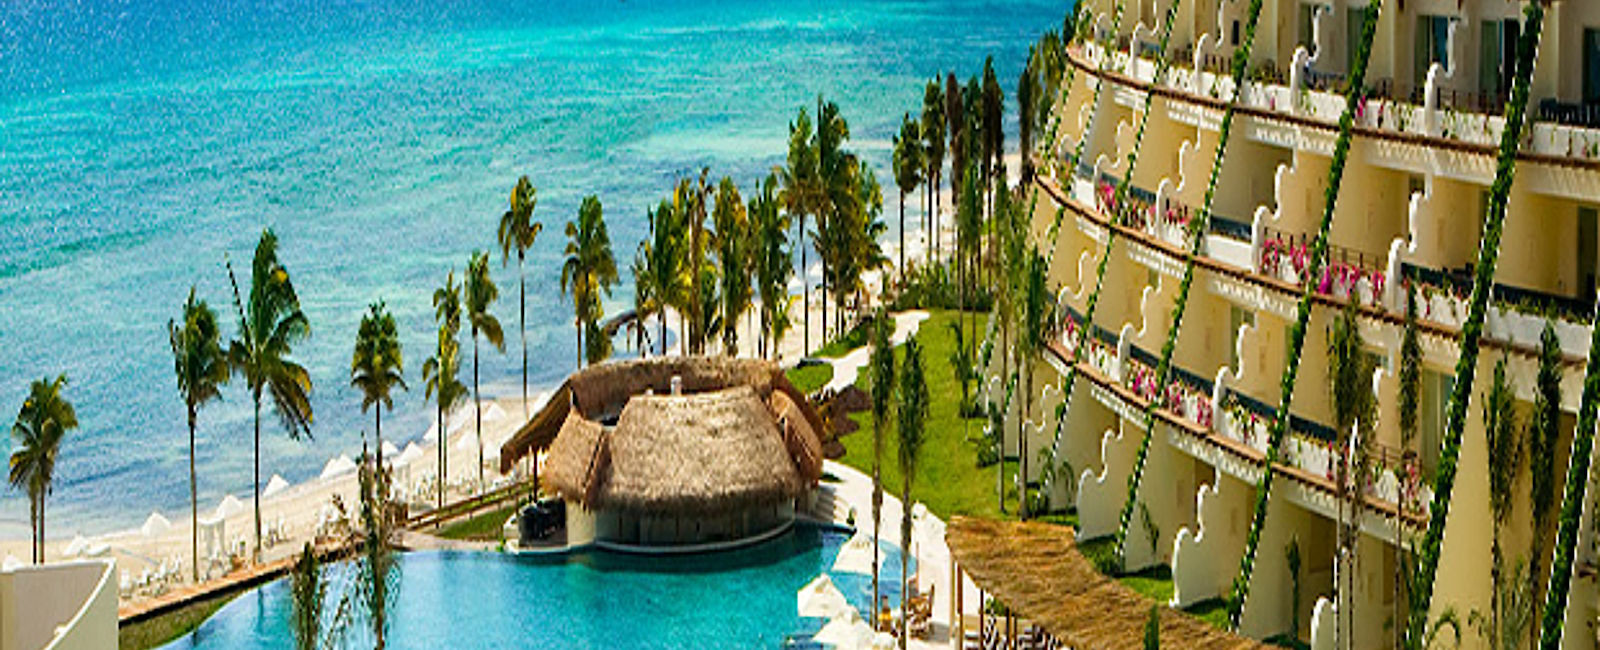 HOTEL TIPPS
 Grand Velas Riviera Nayarit 
 Großzügiges Exklusiv-Hotel mit eigenem Kids Spa 